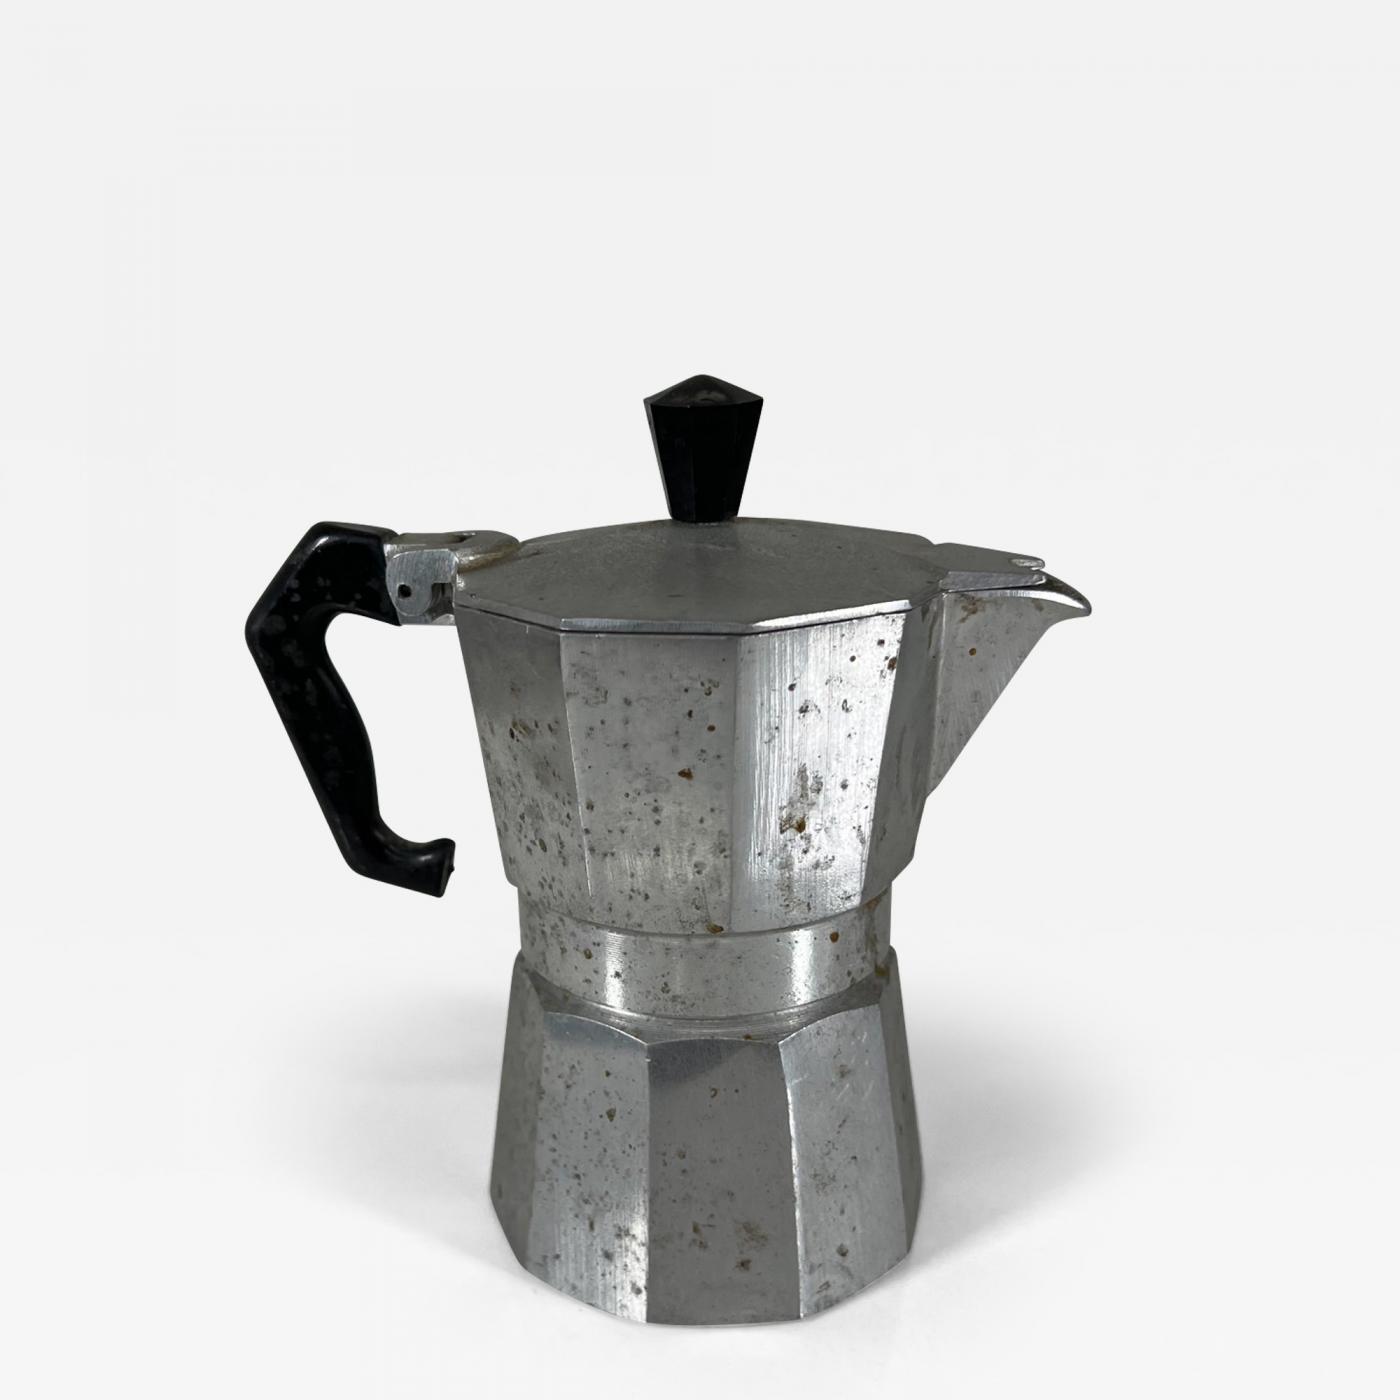  Primula Classic Stovetop Espresso and Coffee Maker